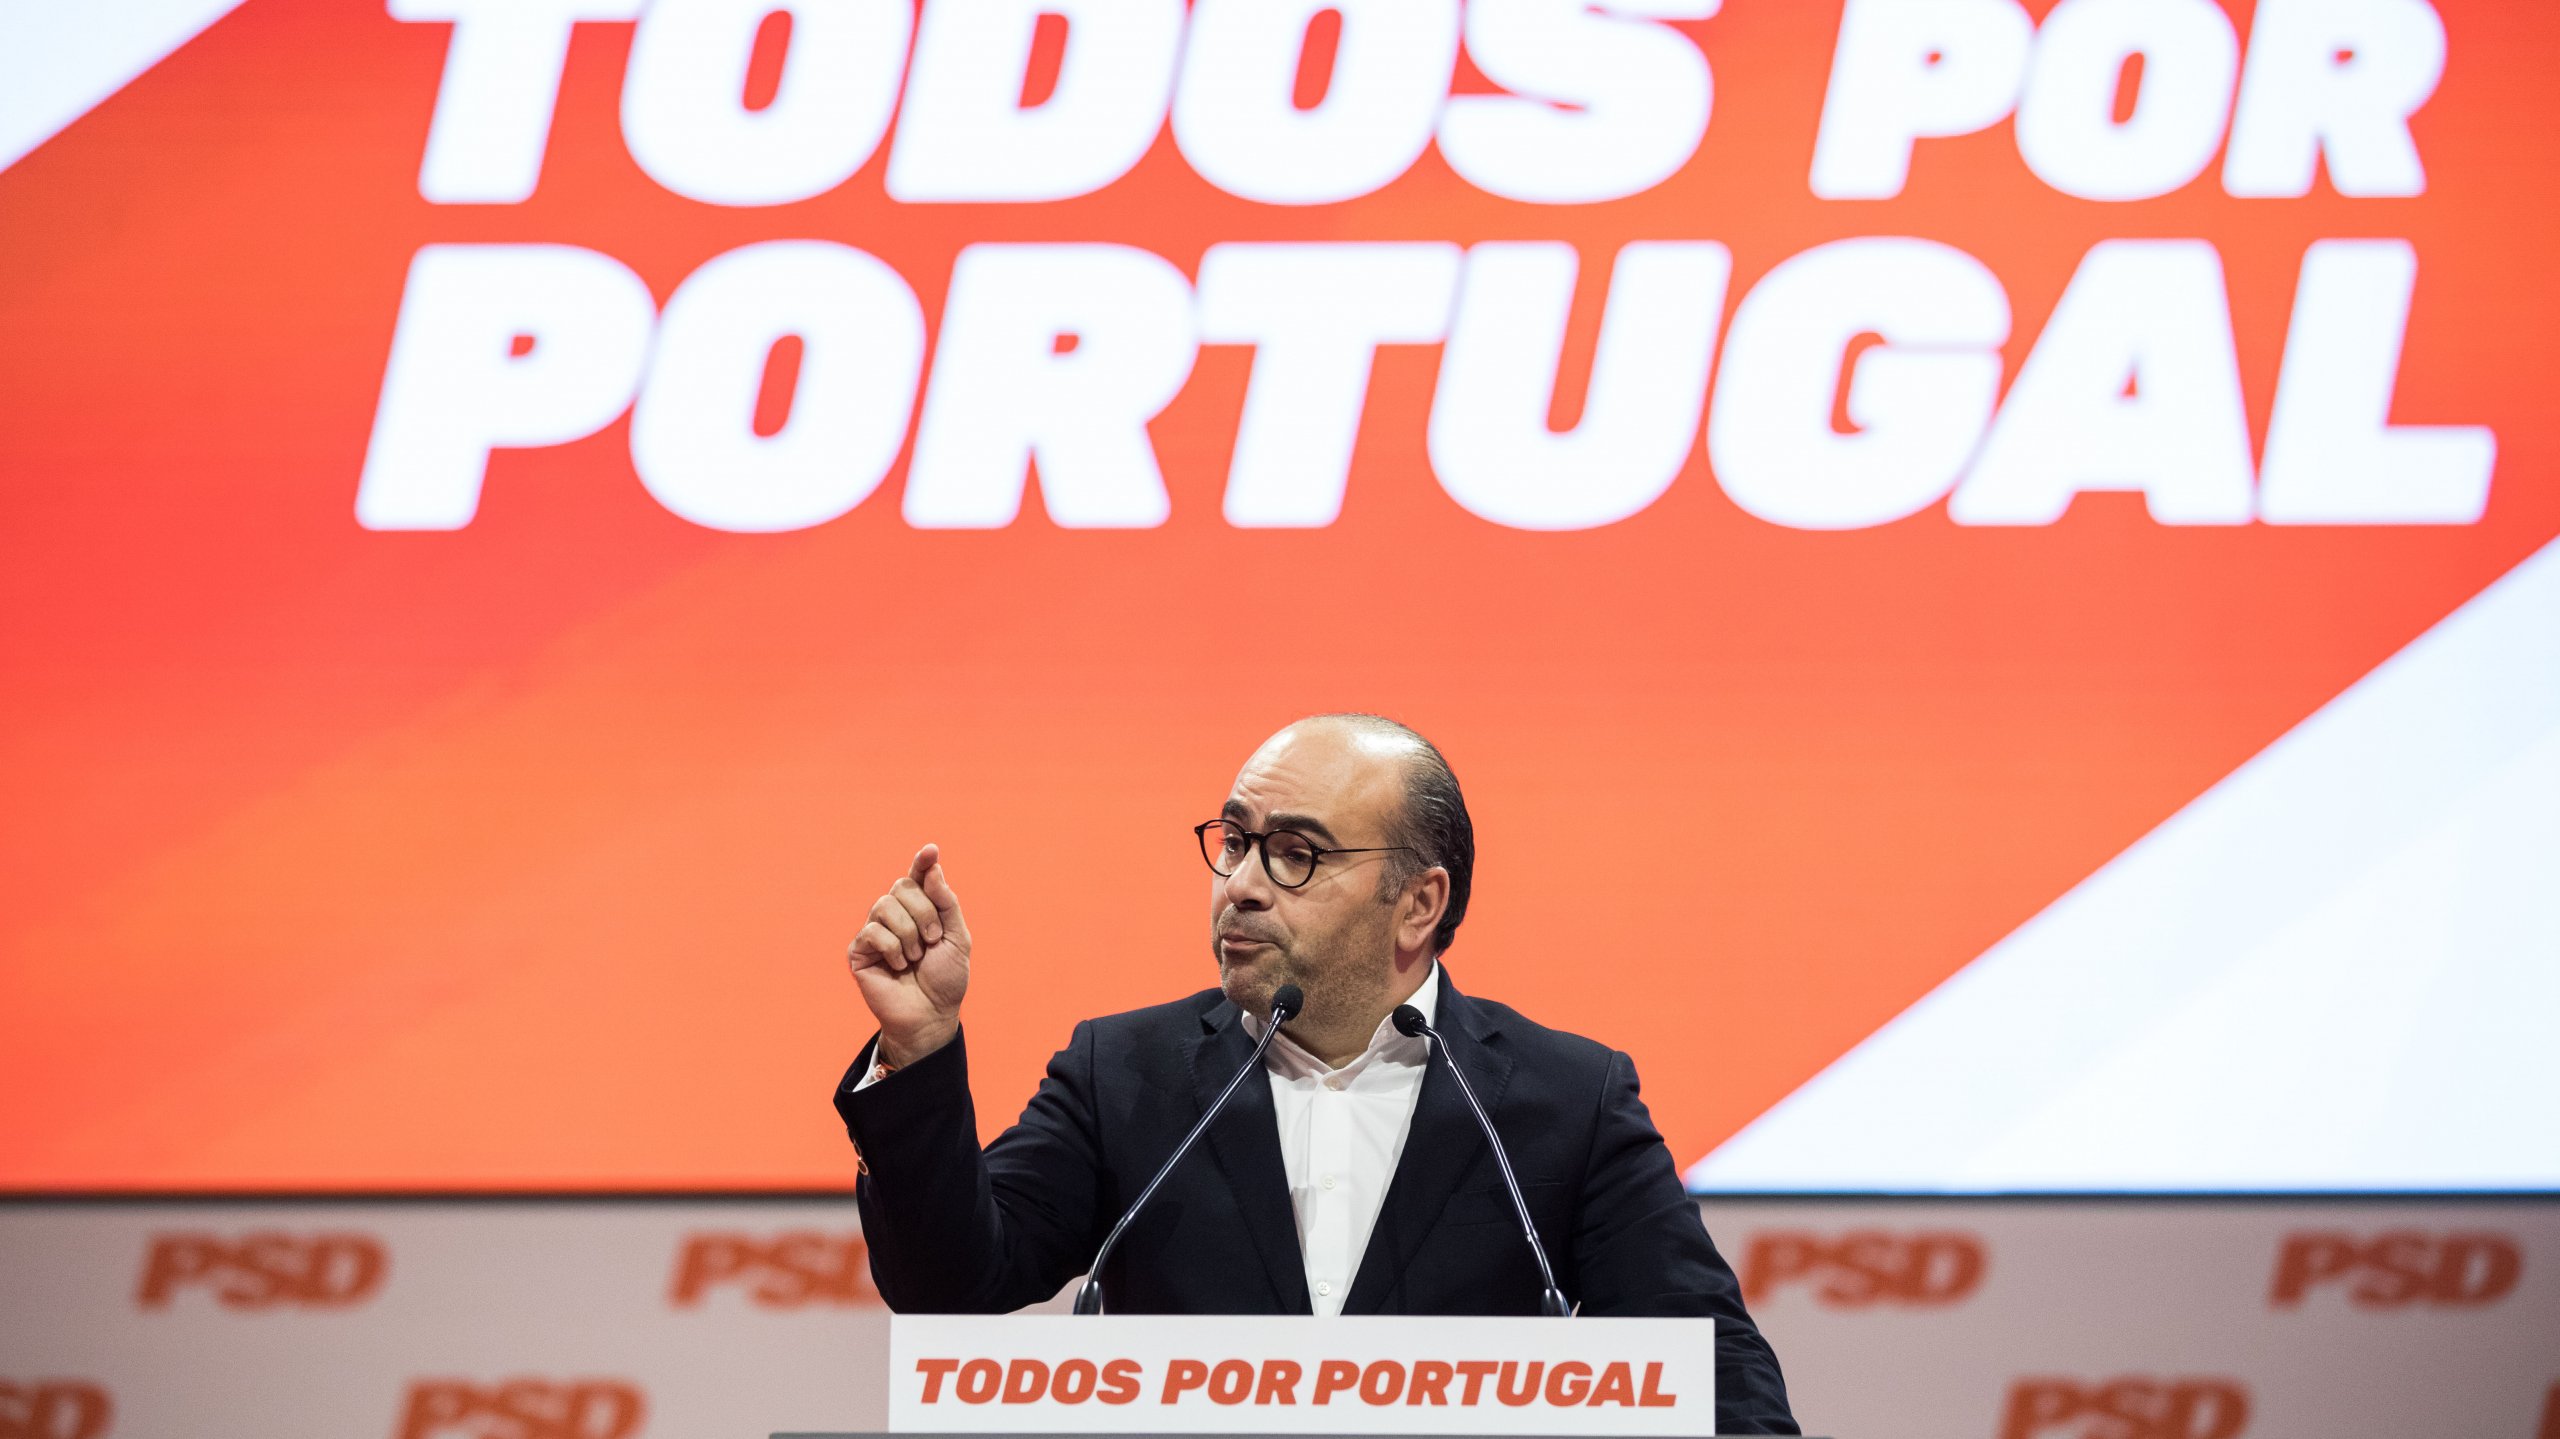 Em janeiro, quando foi candidato à liderança do PSD, Miguel Pinto Luz admitiu disponibilidade para formar alianças com qualquer partido representado no parlamento, quando questionado sobre a possibilidade de coligações futuras com o Chega